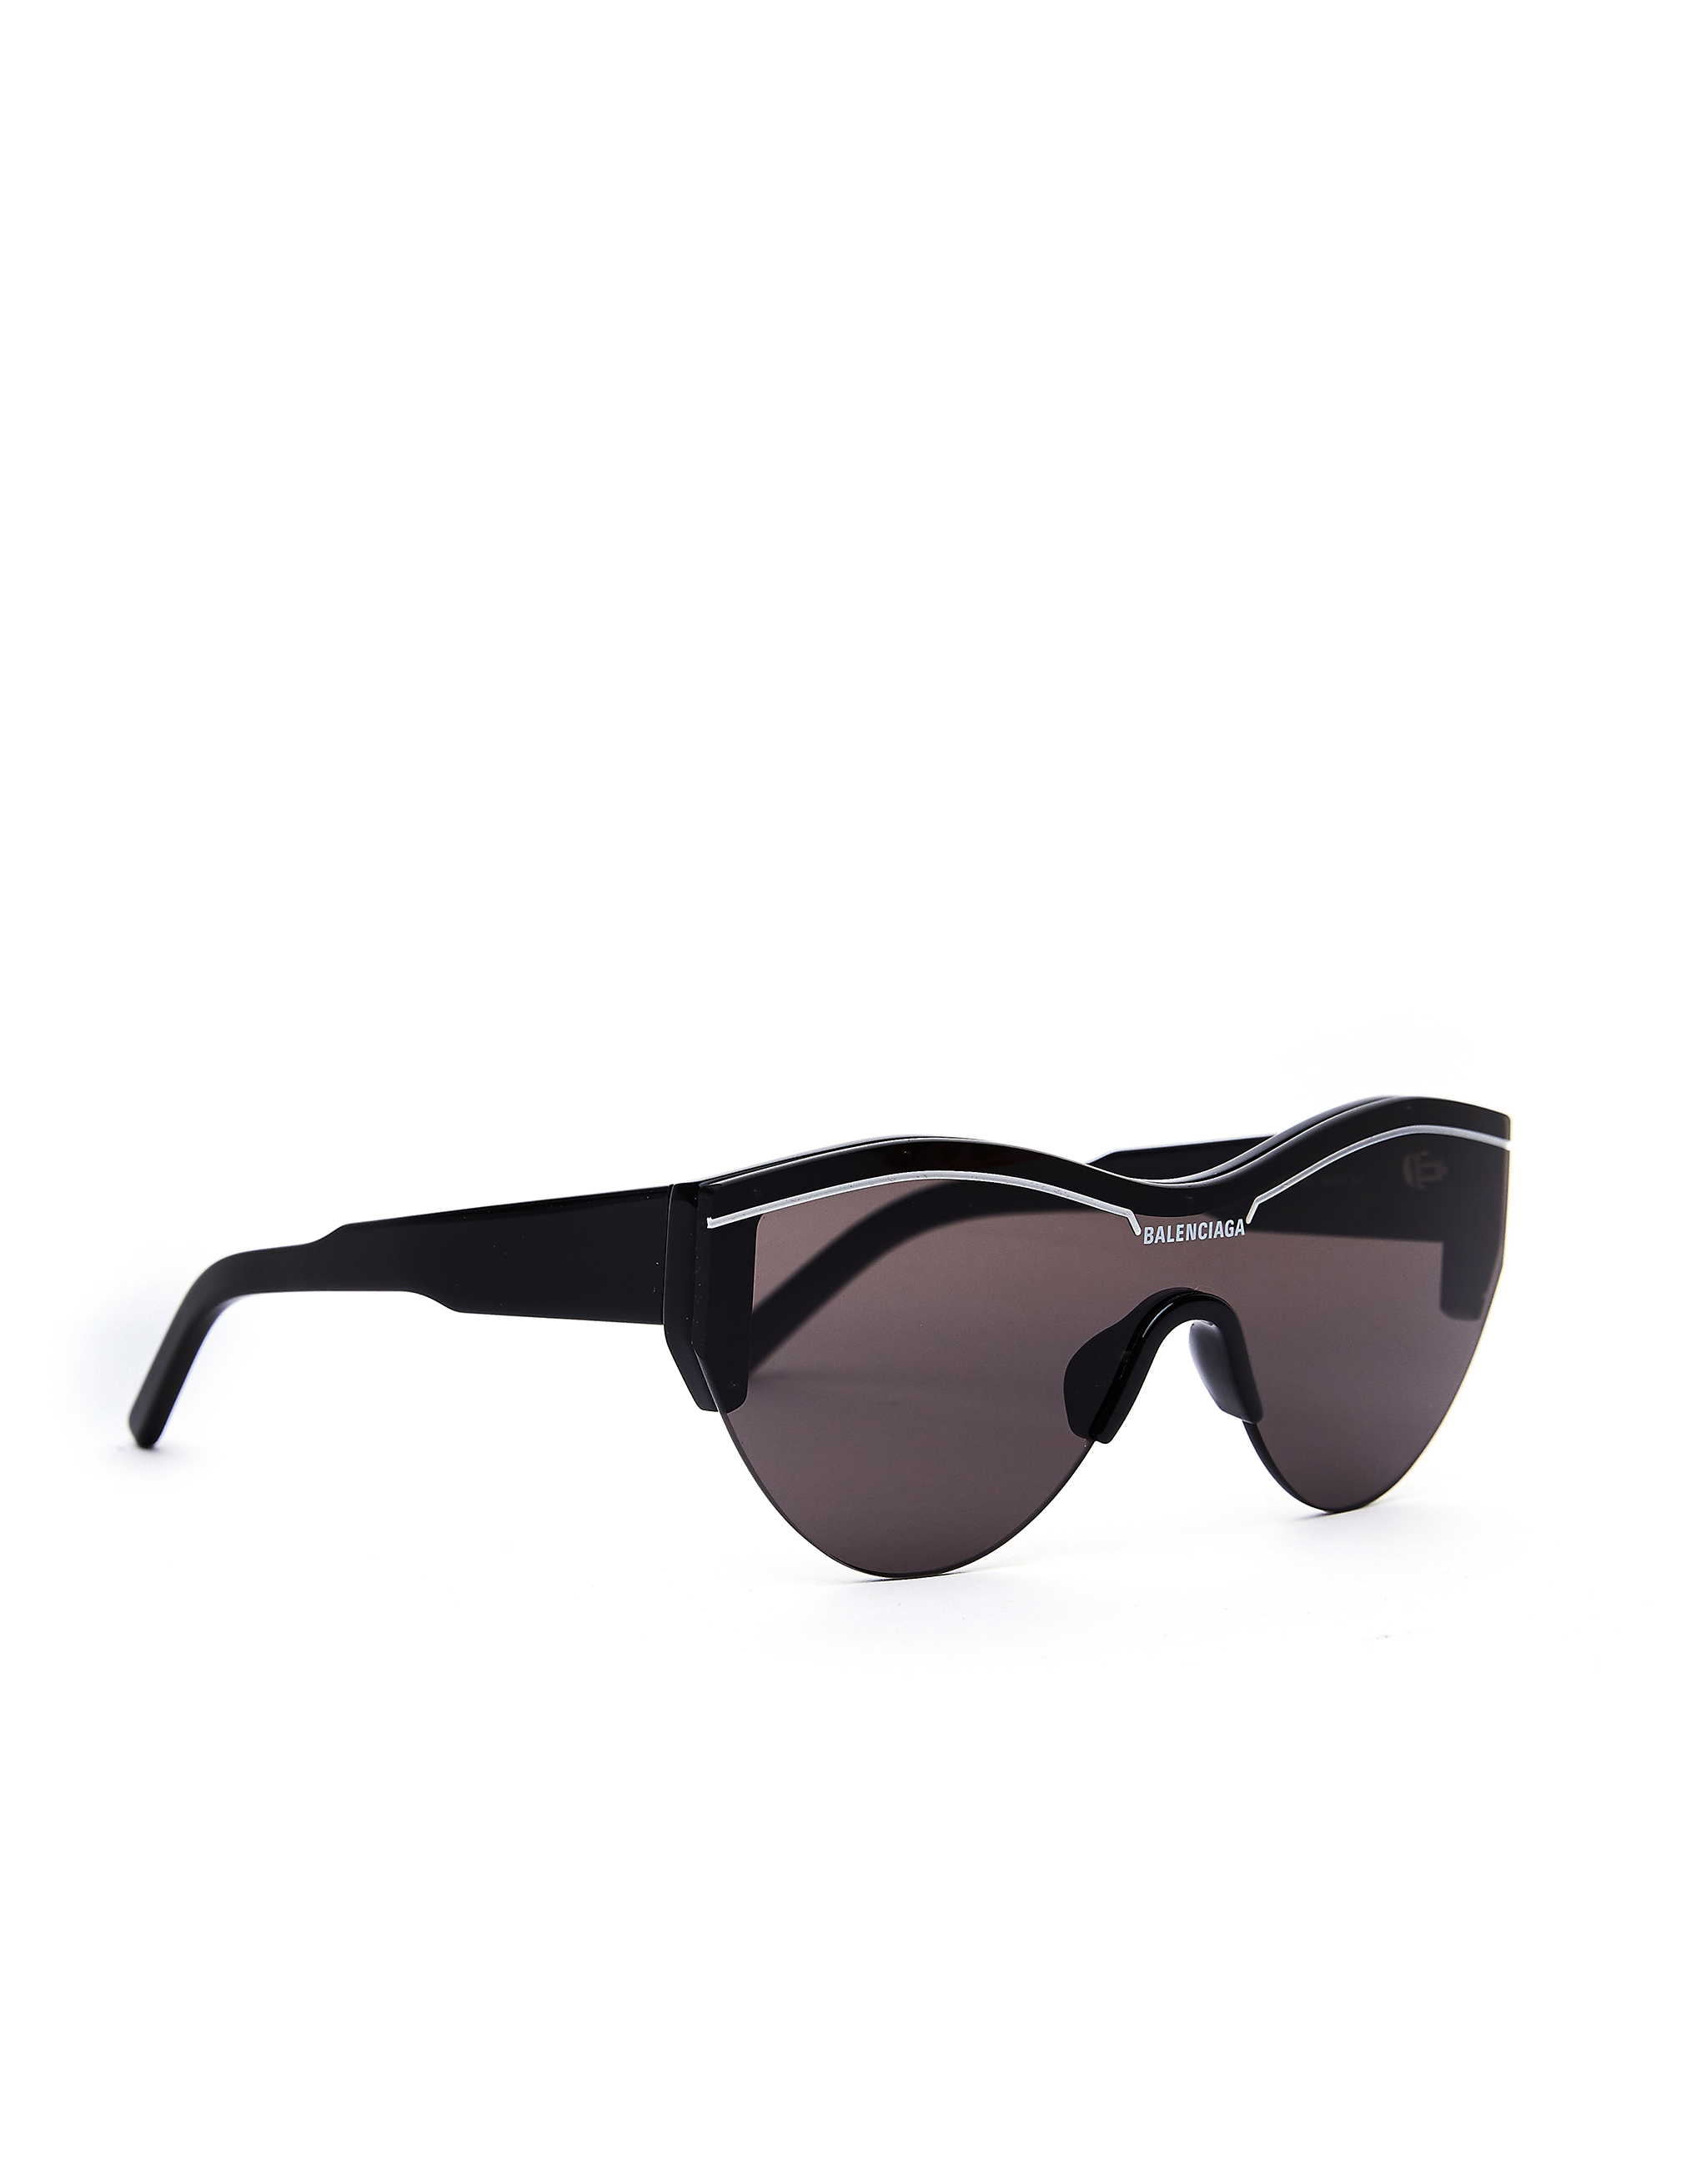 Черные очки Ski Cat Balenciaga 570484/T0001/1000, размер One Size